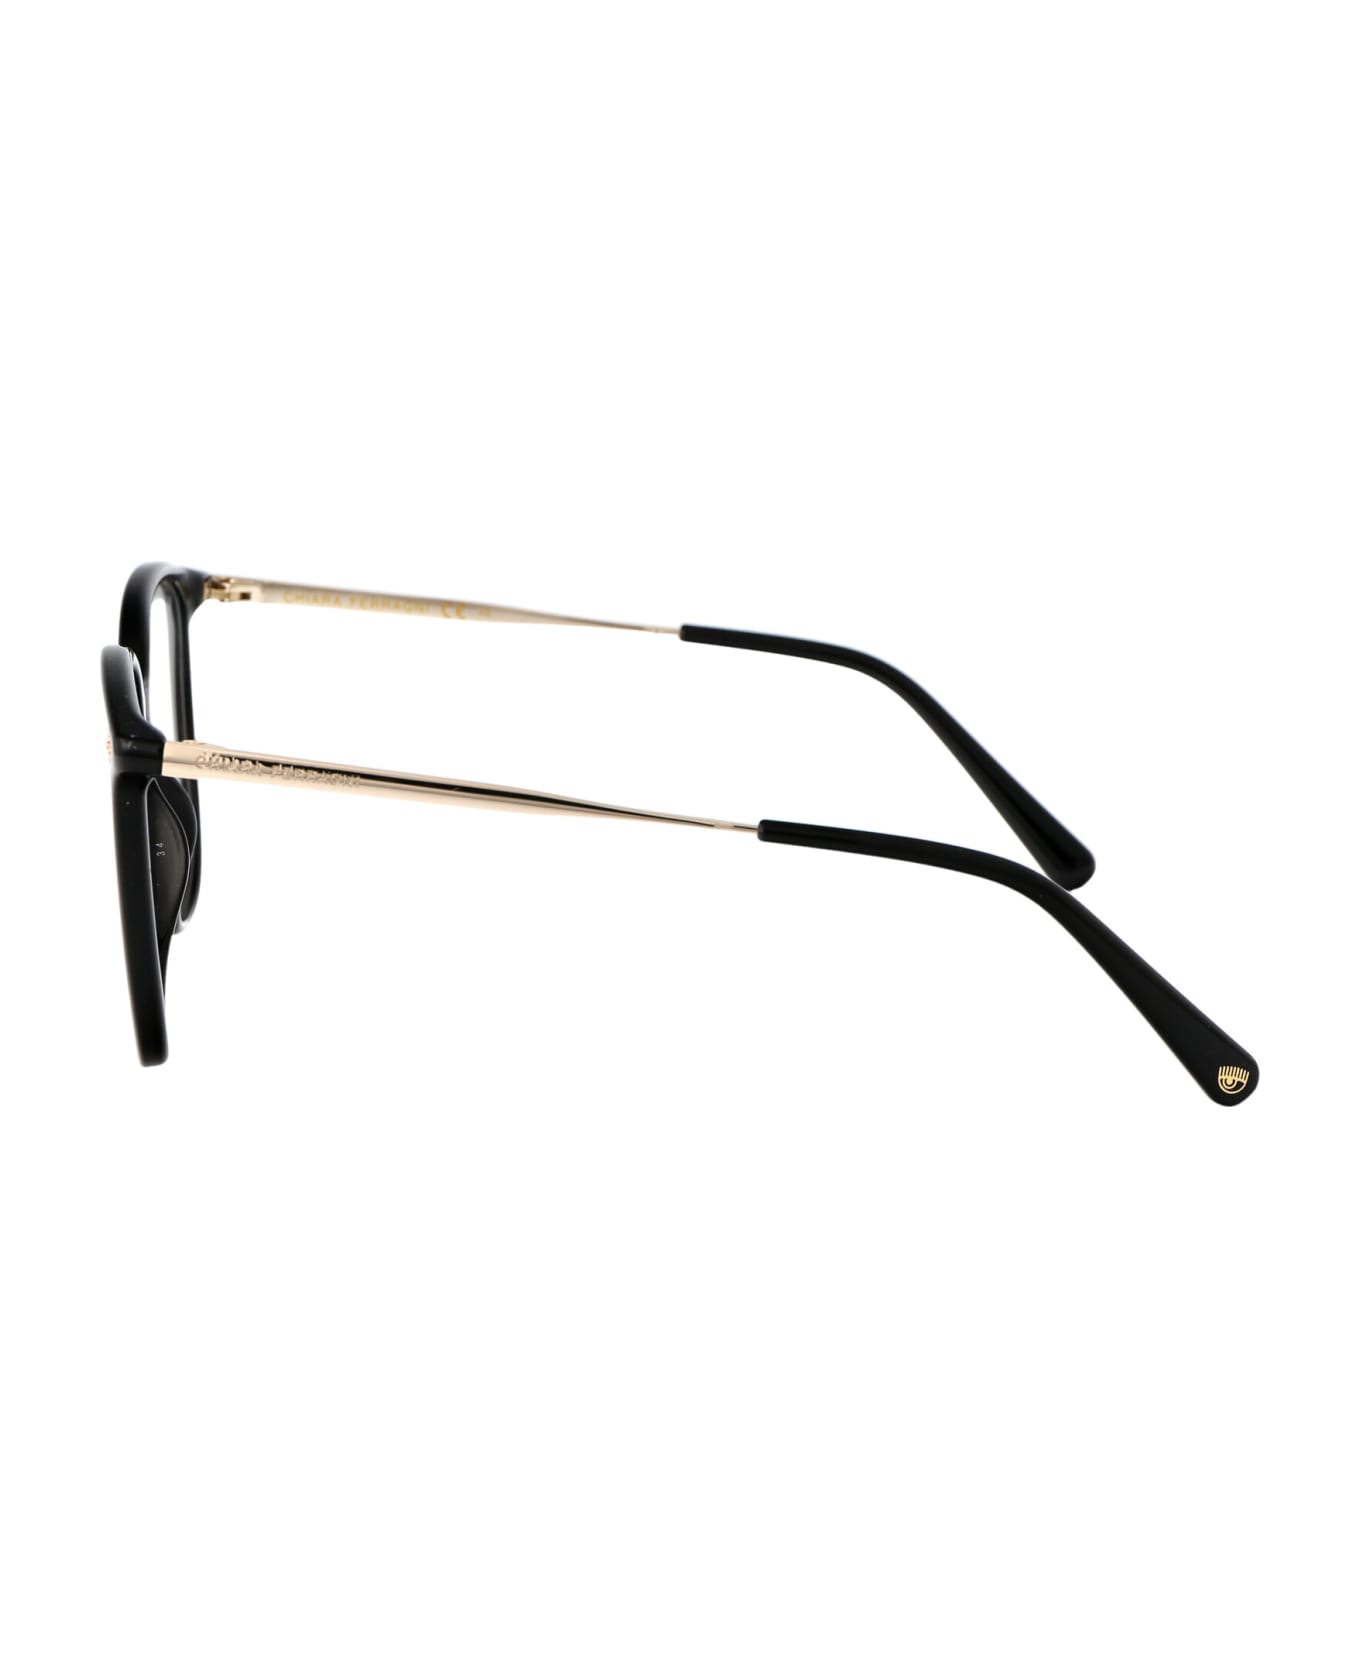 Chiara Ferragni Cf 1029 Glasses - 807 BLACK